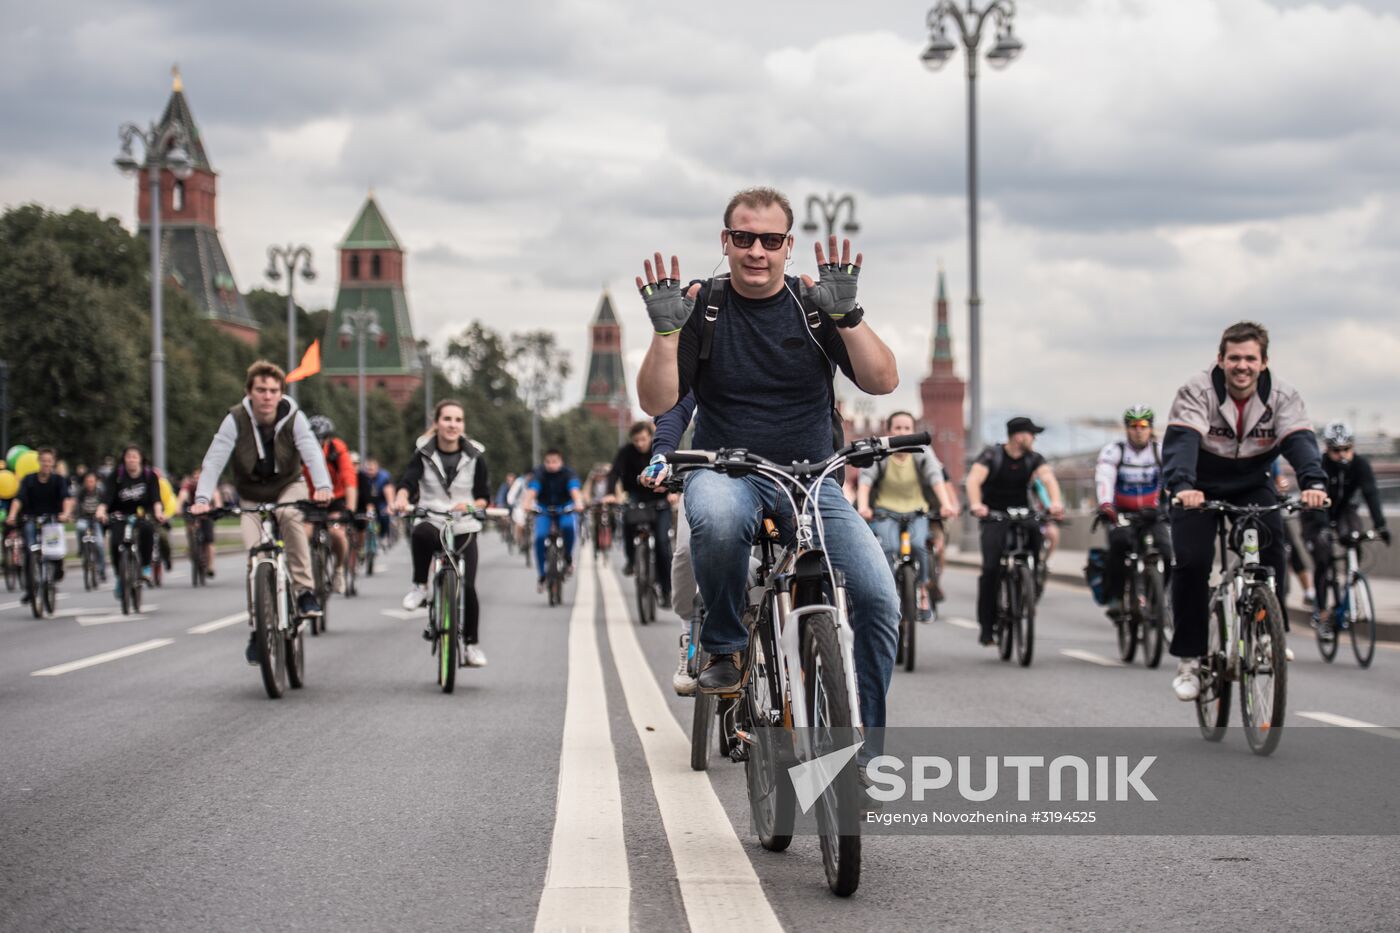 Moscow Bike Parade